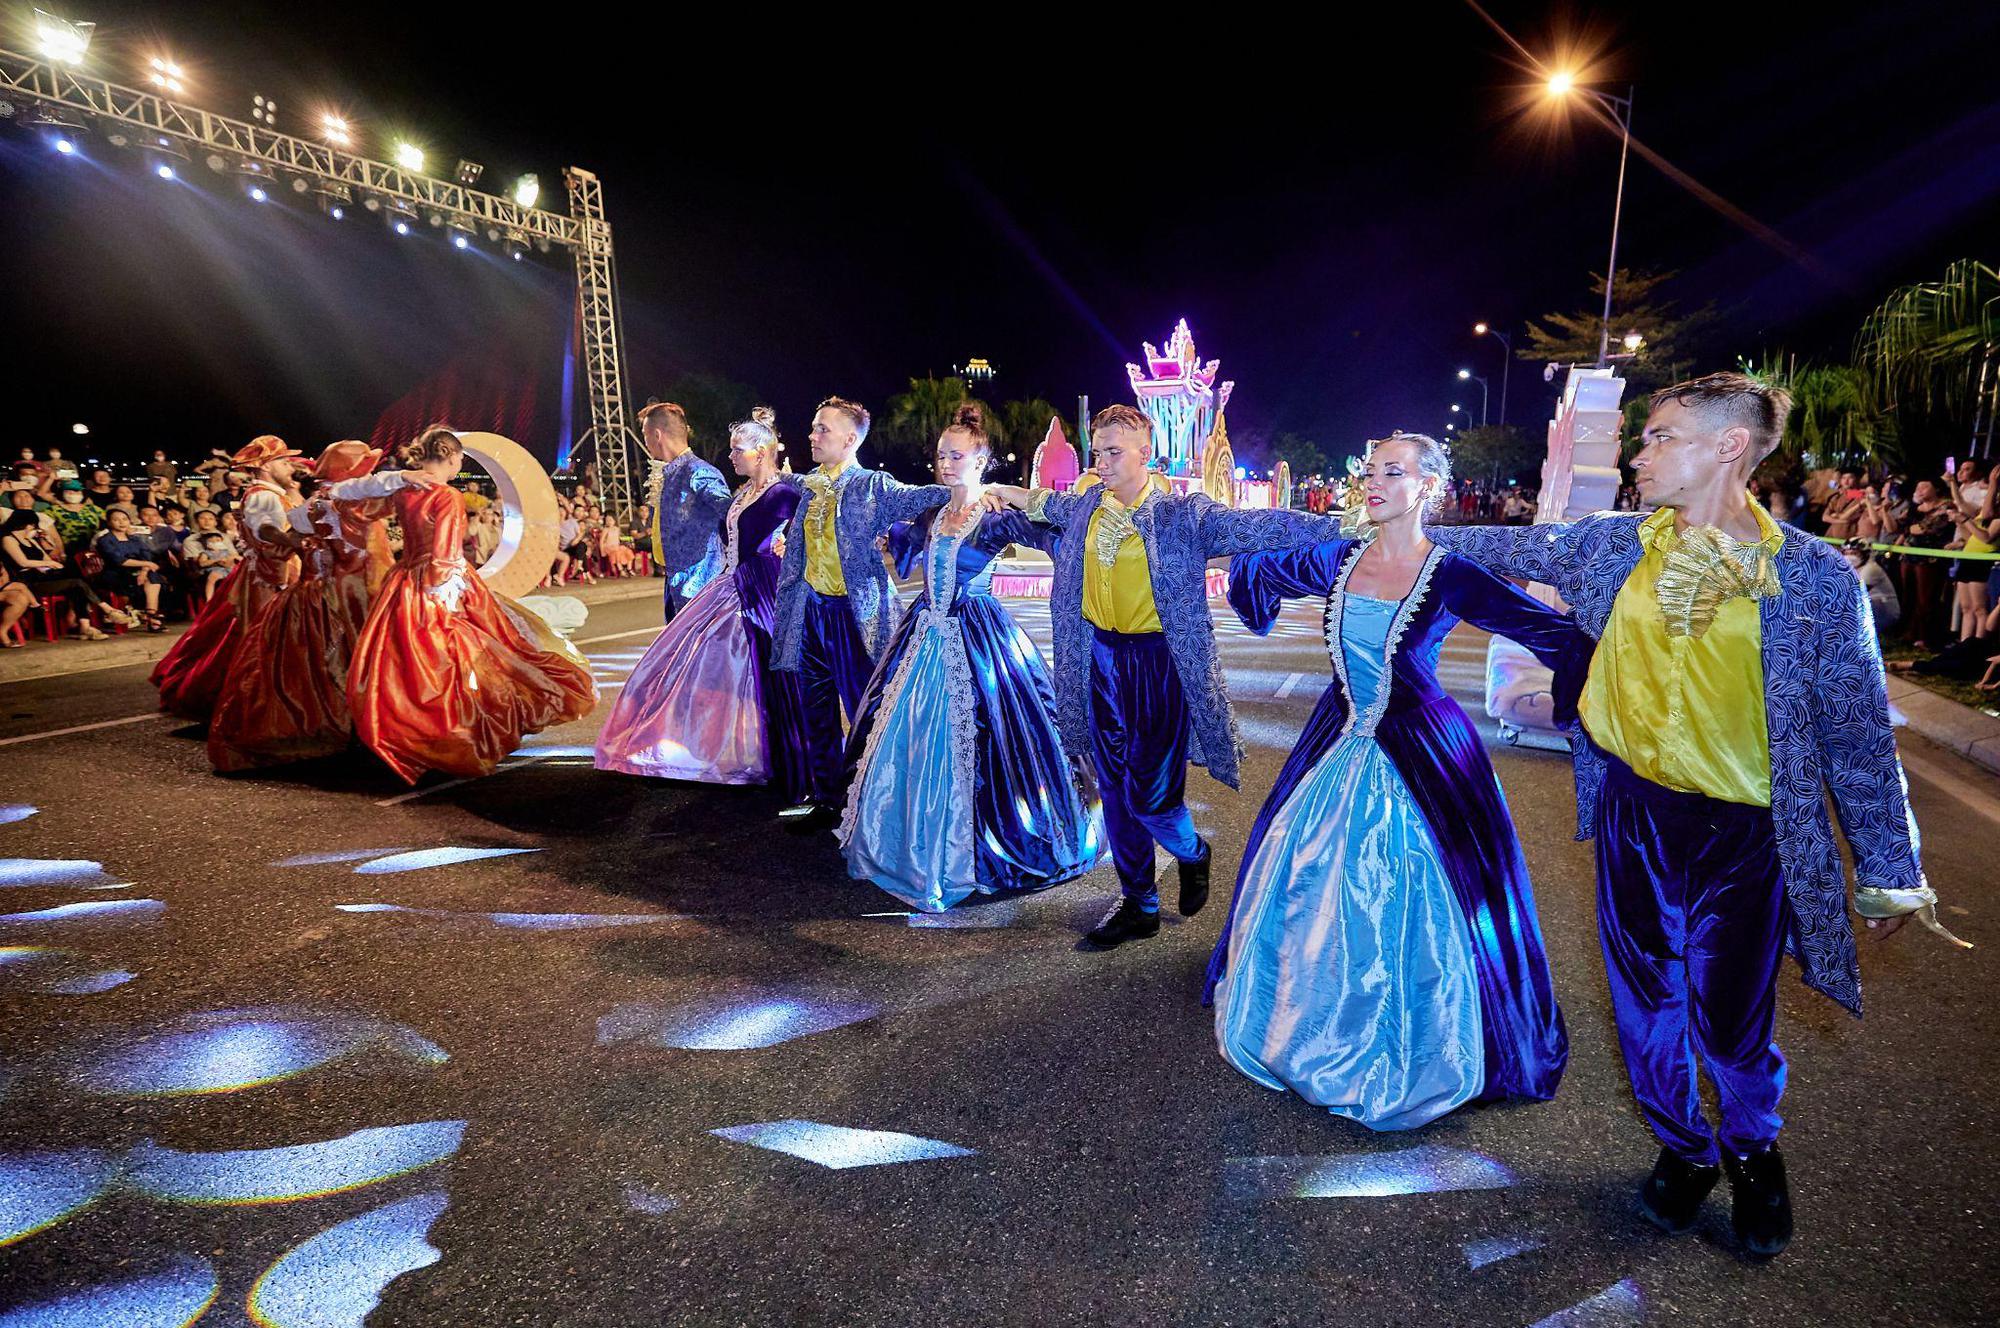 Đà Nẵng náo nhiệt với đêm lễ hội Carnival đường phố Sun Fest đầu tiên - Ảnh 7.